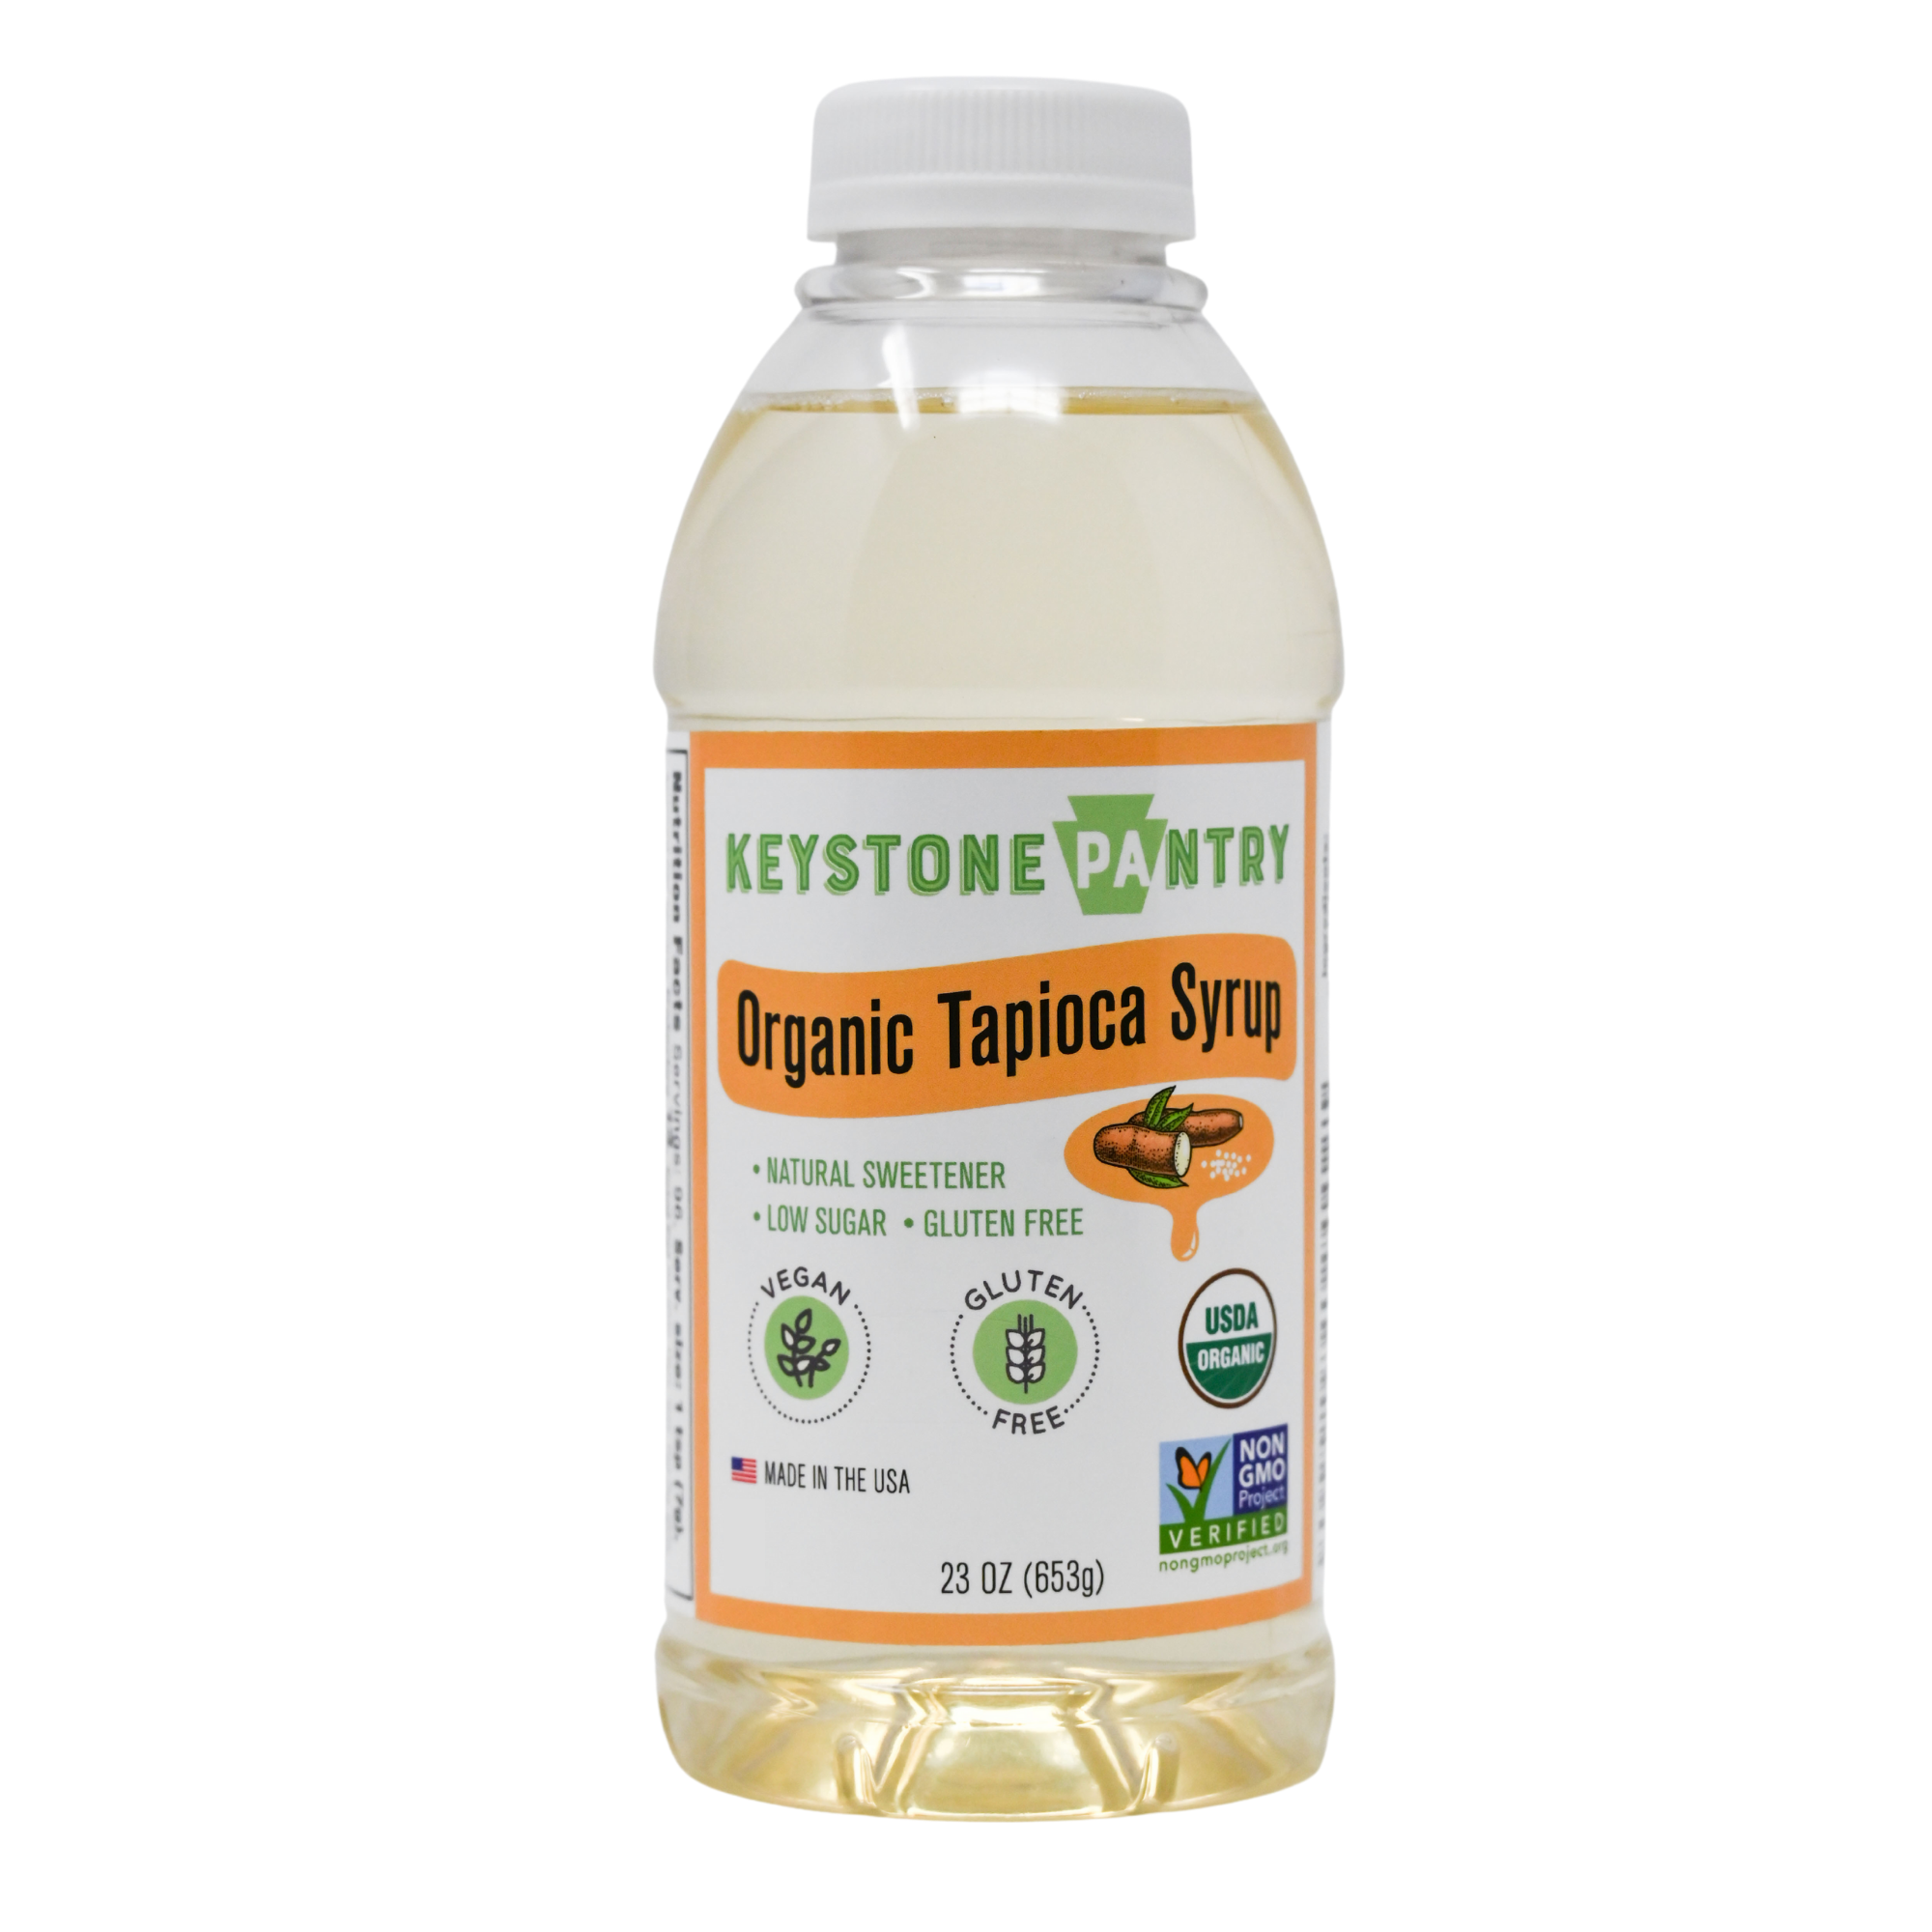 Keystone Pantry Organic Tapioca Syrup 23 oz Bottle Natural Sweetener